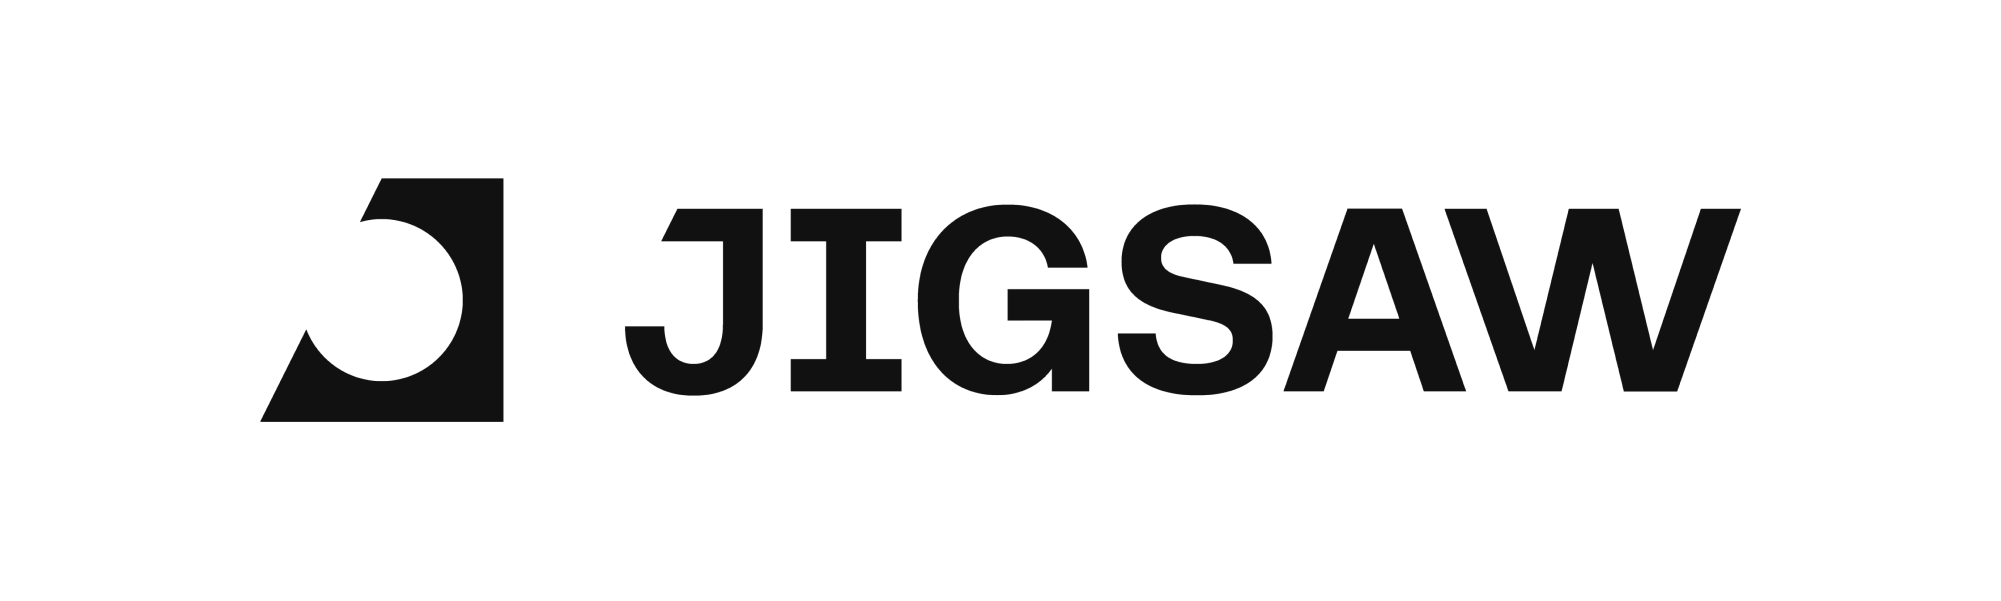 Jigsaw-2A